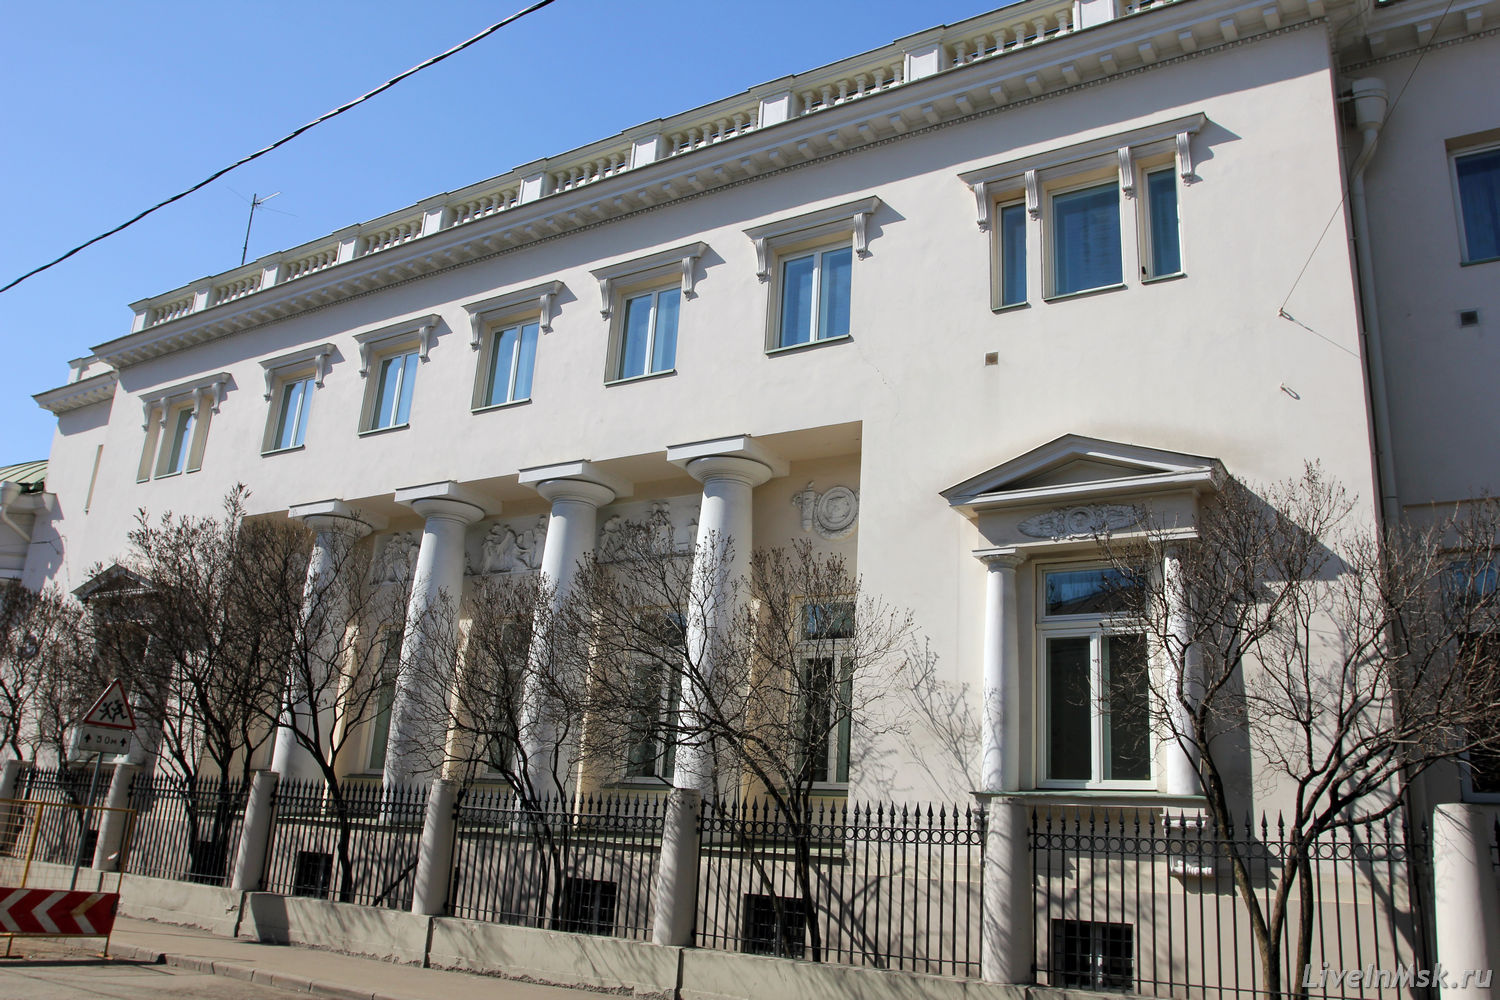 Австрийское посольство